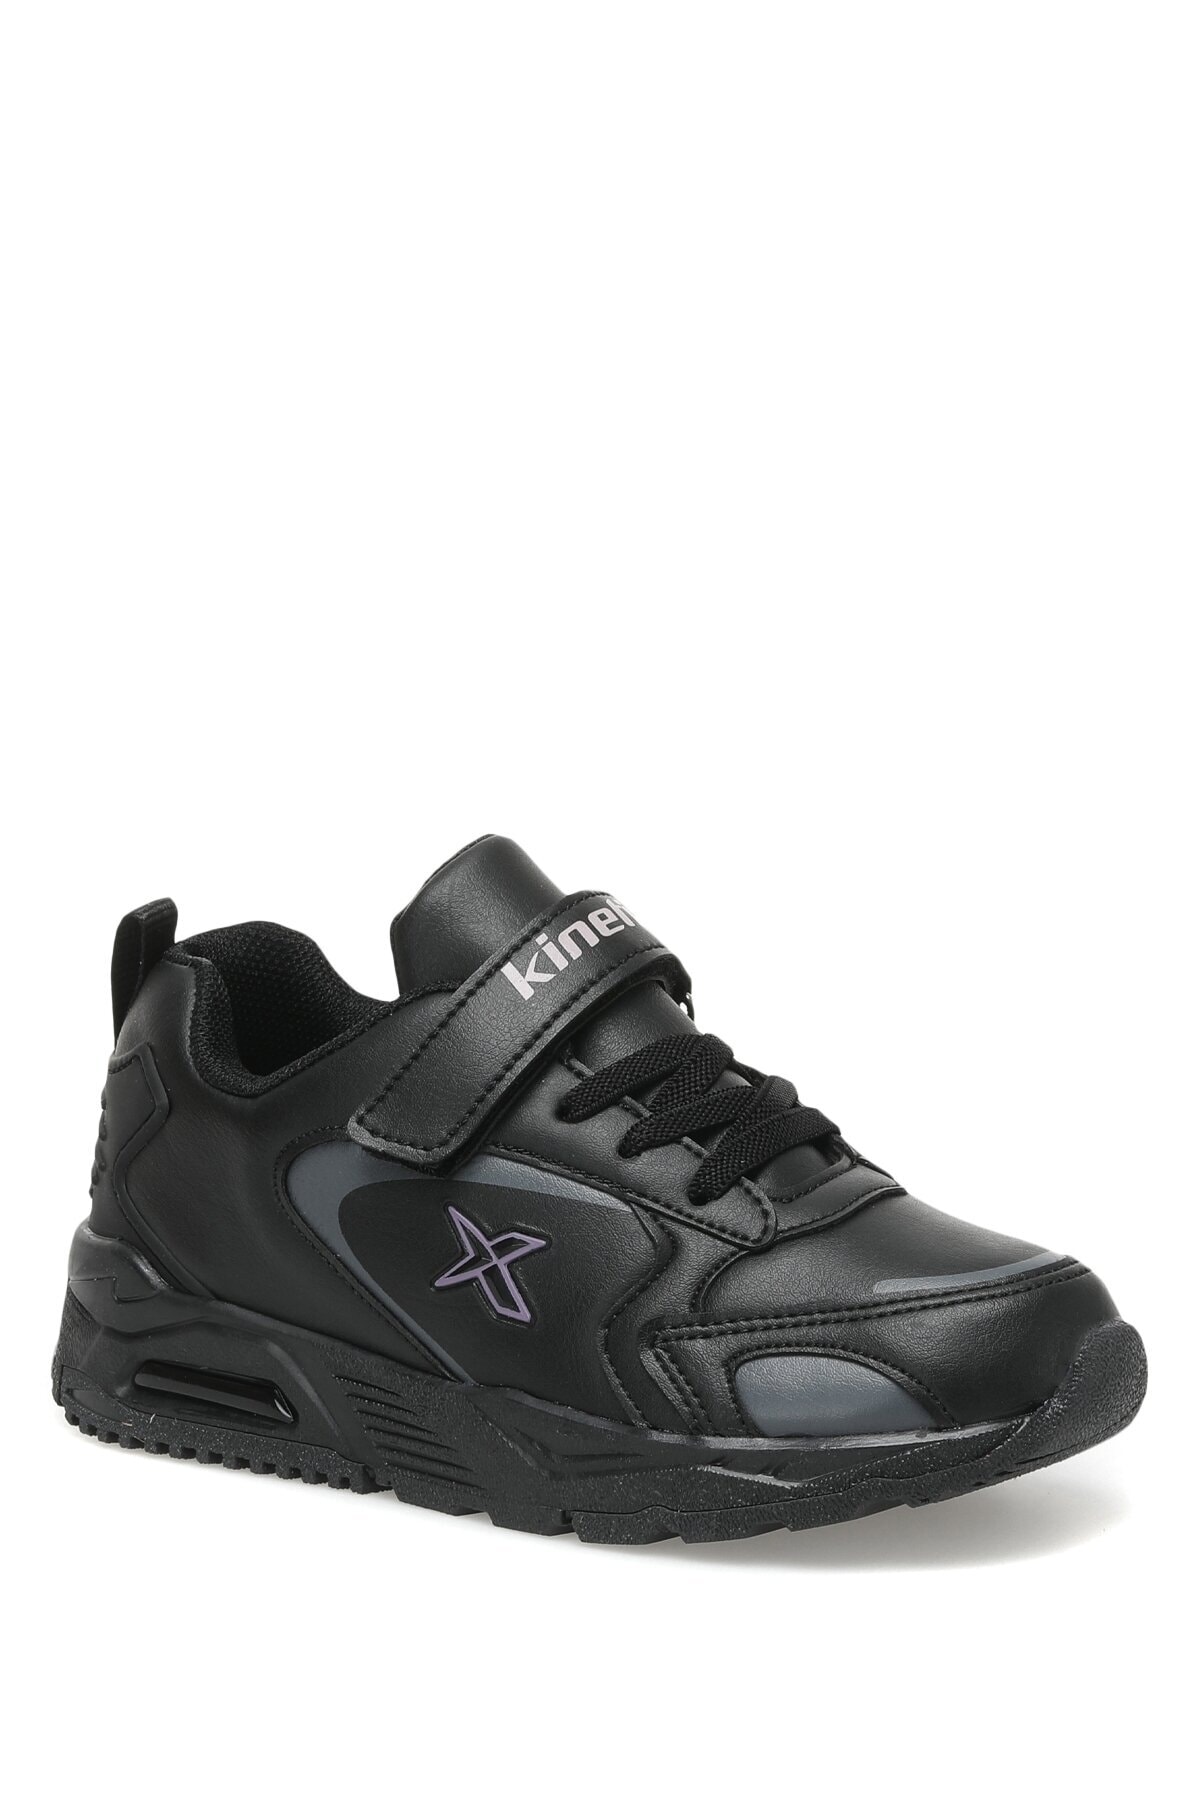 Kinetix Onstor 2pr Siyah Kız Çocuk Spor Ayakkabı